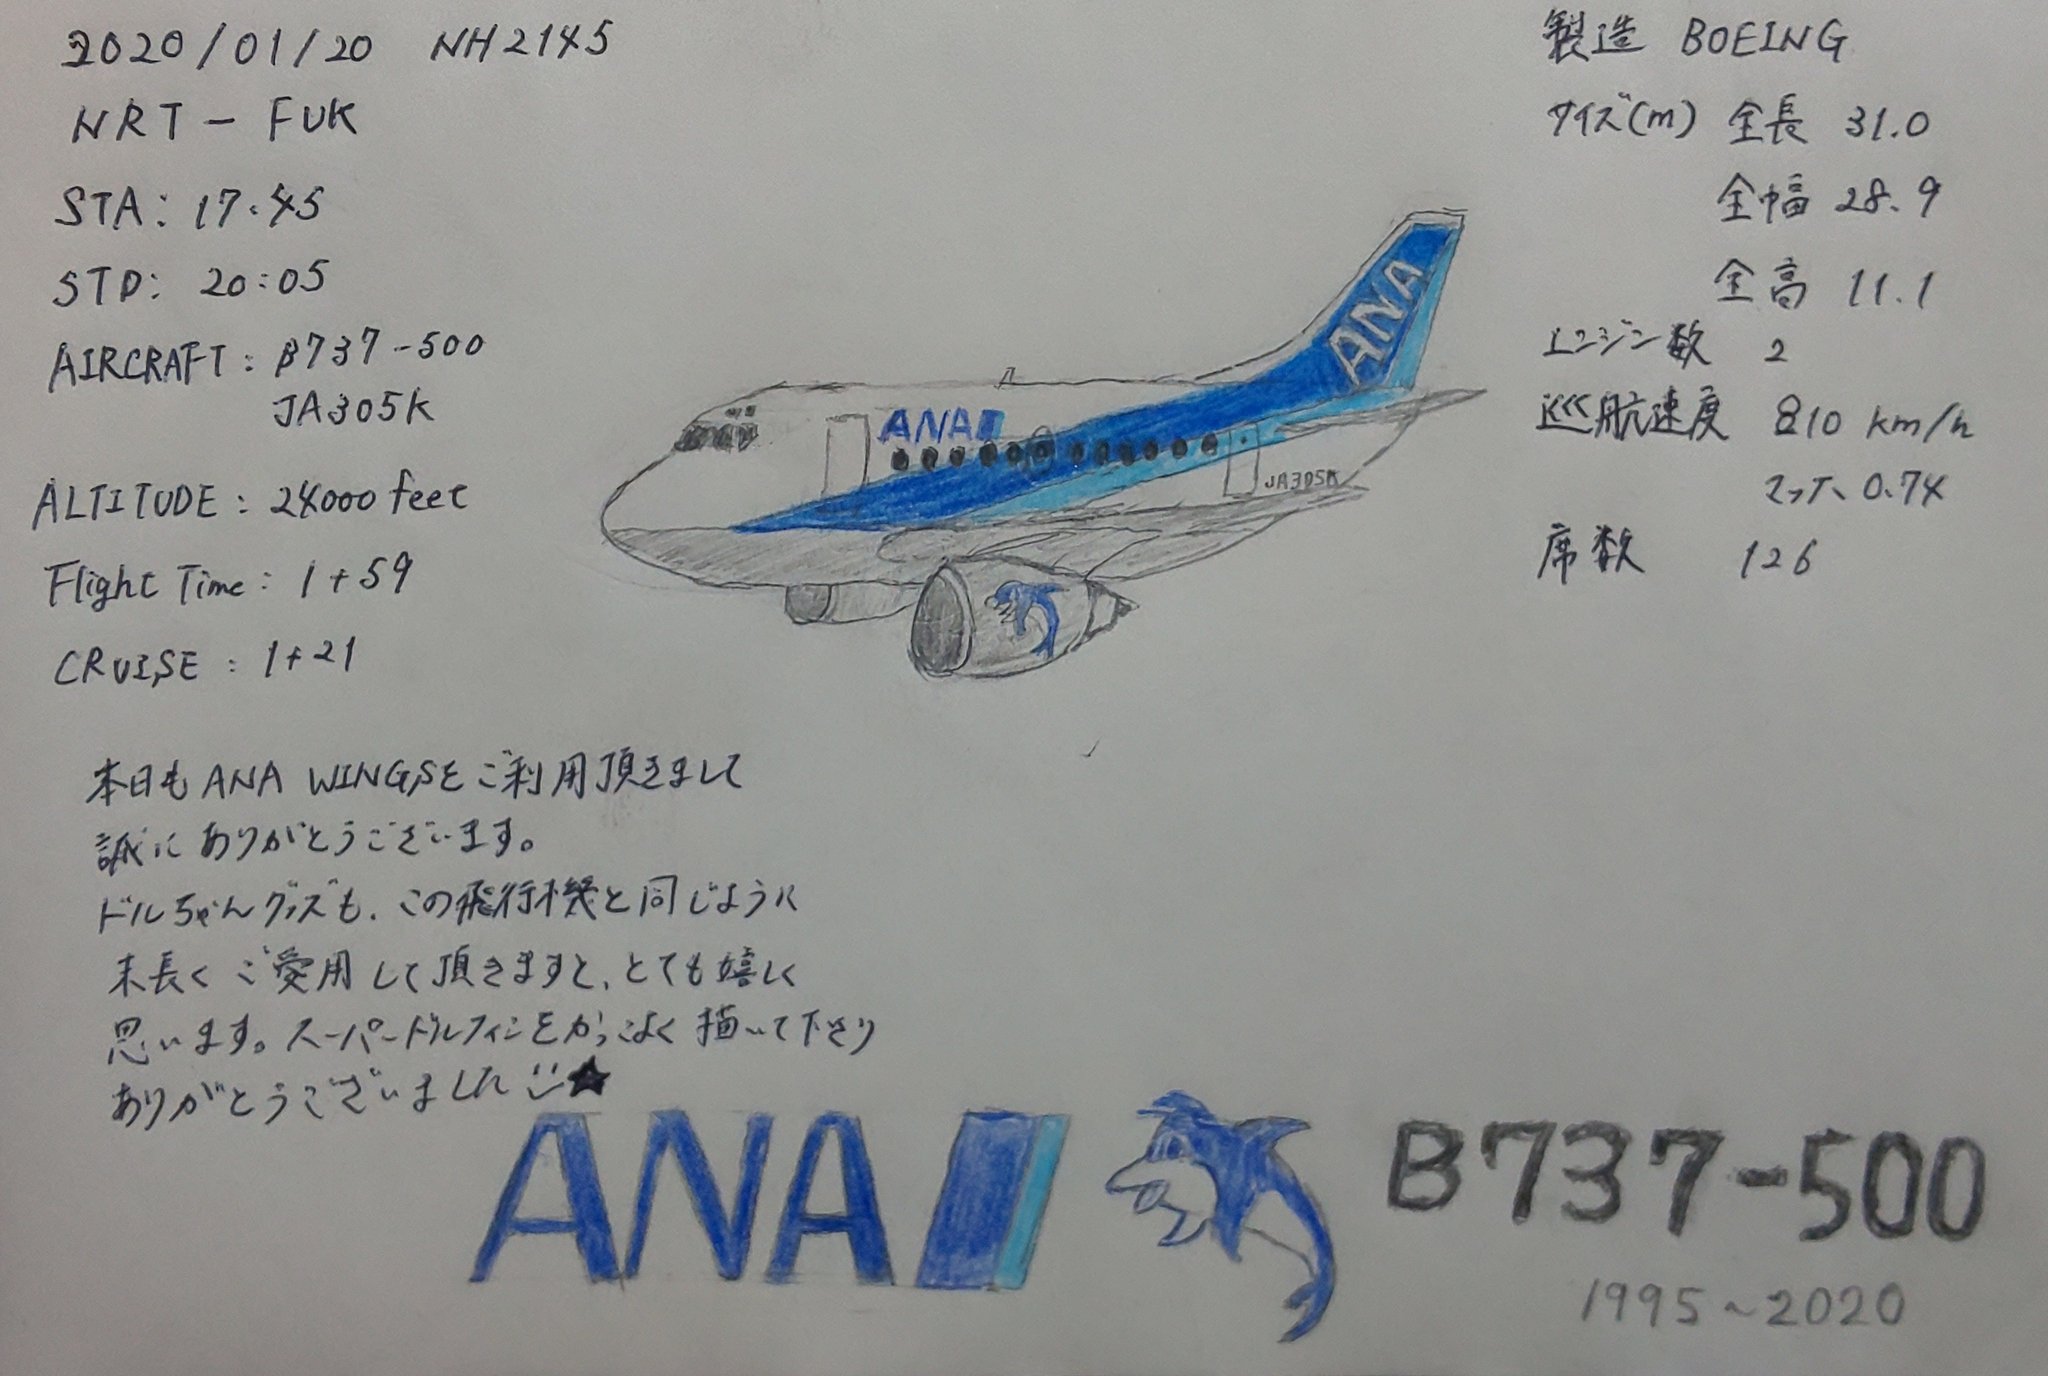 ハカソシ 帰りに成田 福岡で乗った飛行機の機内で描いたイラストにcaさんに頼んでフライトログを入れて貰いました 左側のログとメッセージ 右側のデータはcaさんによるものです Ana Nh2145便に搭乗されていたana Wingsのcaさんありがとうございましたm